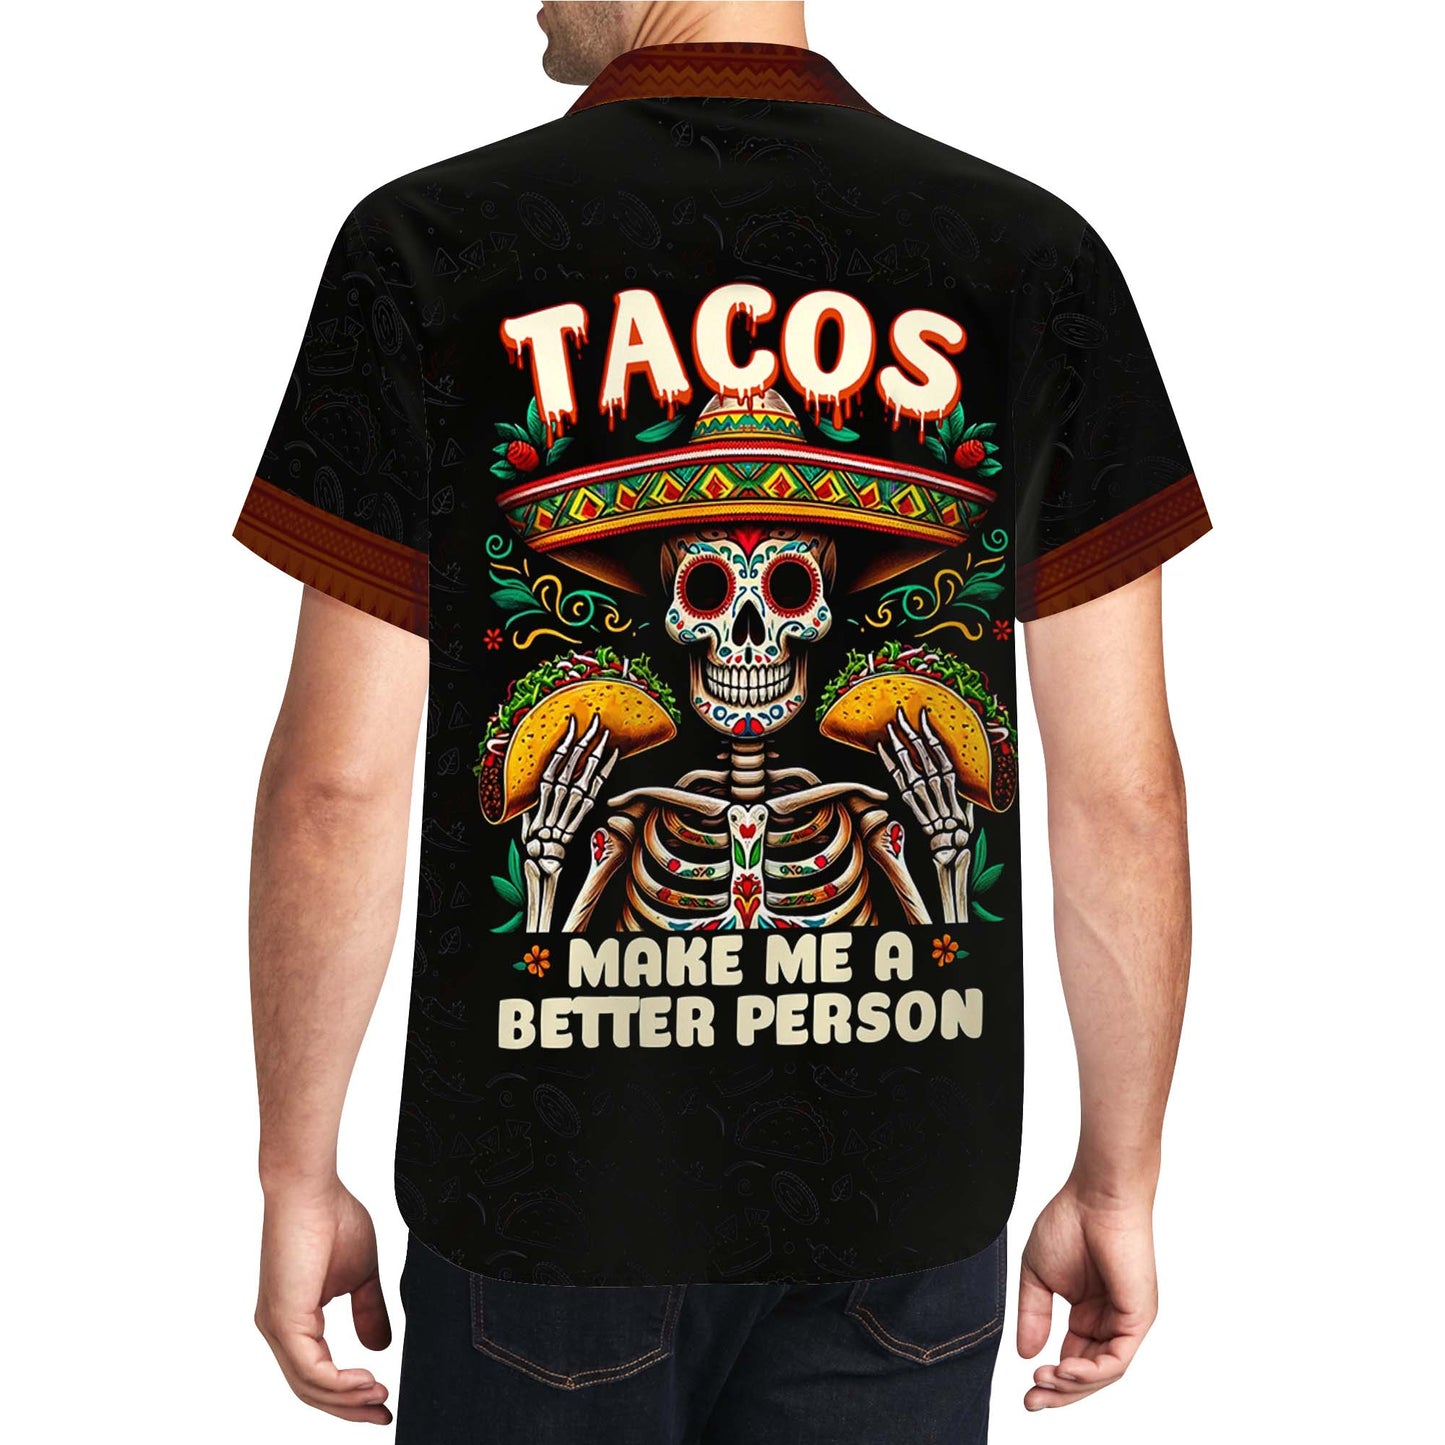 Los tacos me hacen una mejor persona - Camisa hawaiana unisex personalizada - HW_MX02